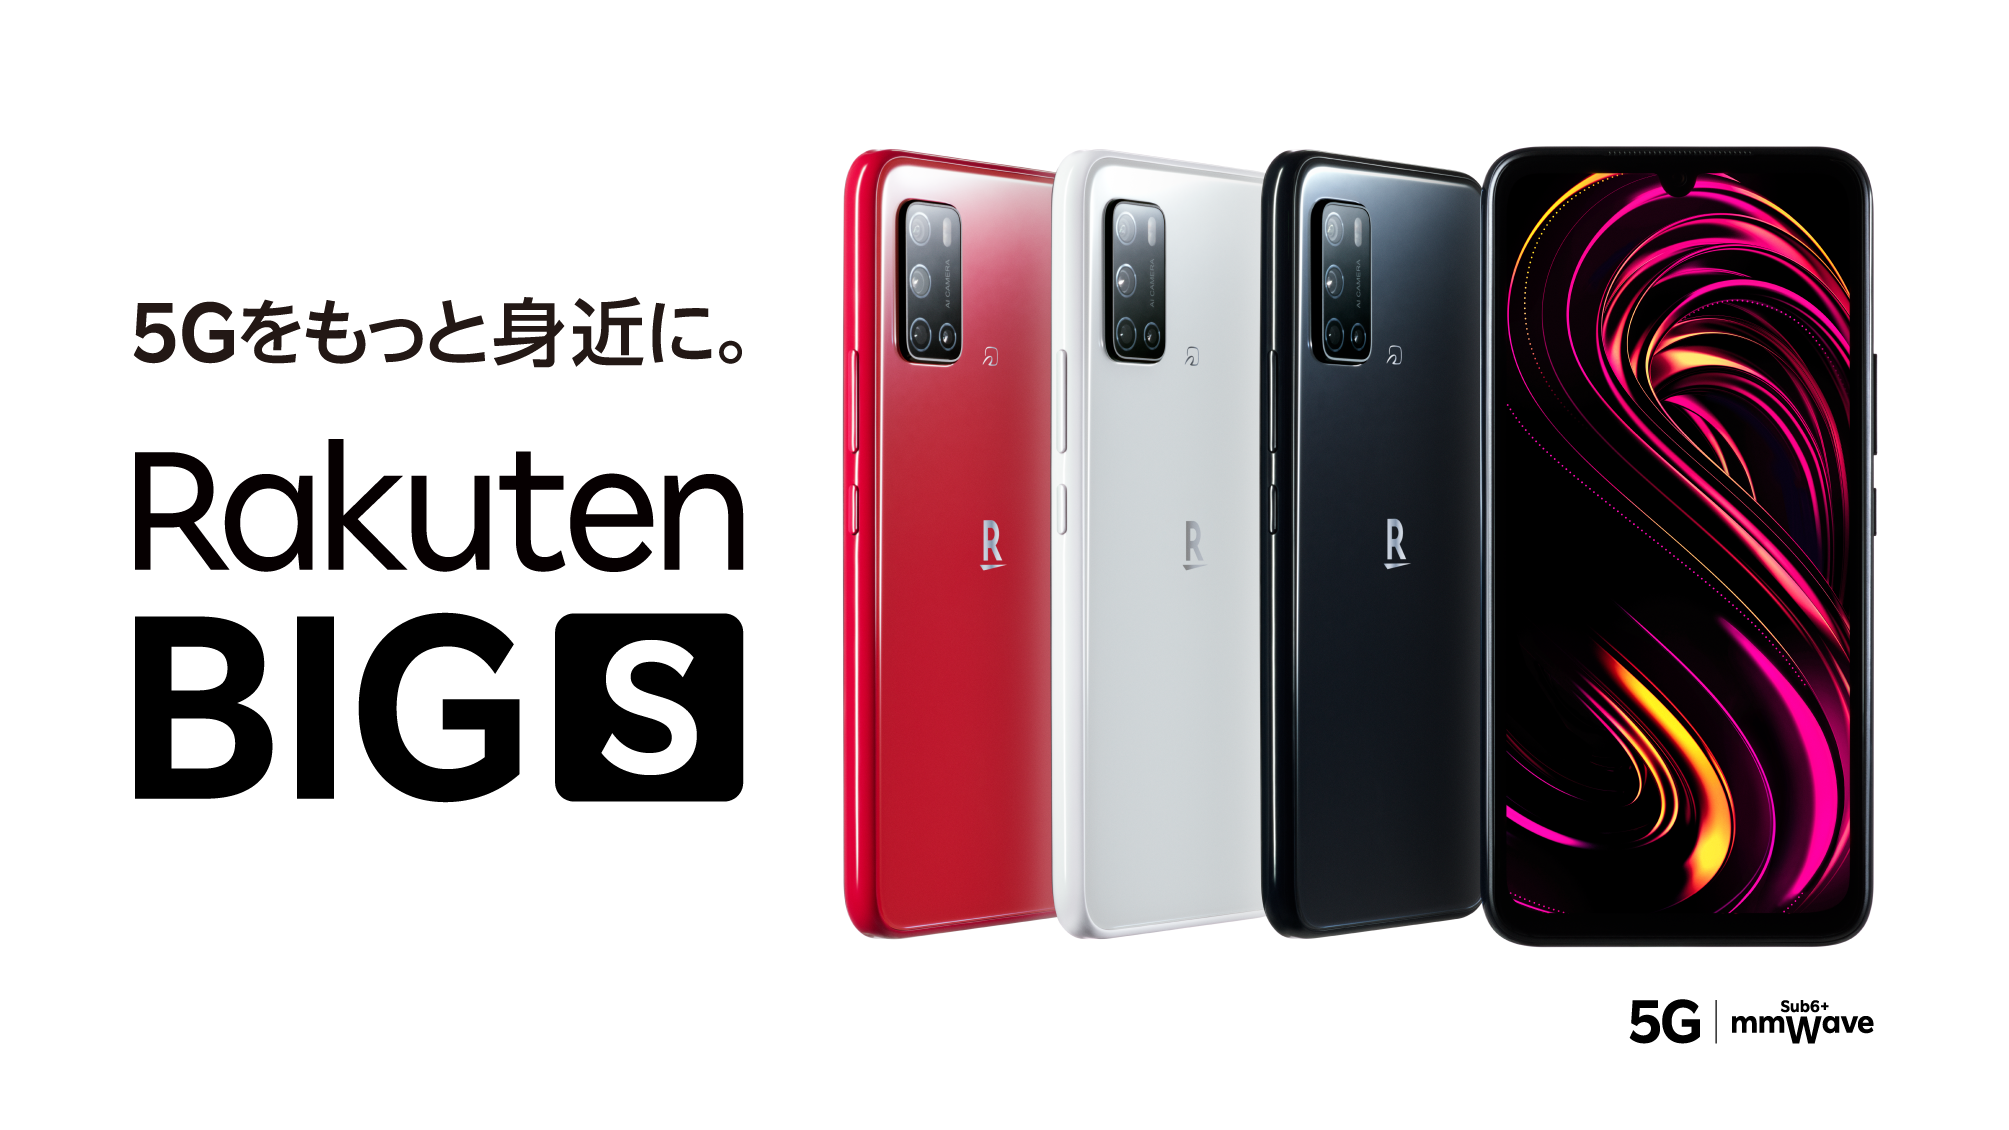 スマートフォン/携帯電話 スマートフォン本体 楽天モバイル、5G対応の新たなオリジナルスマートフォン 「Rakuten BIG 